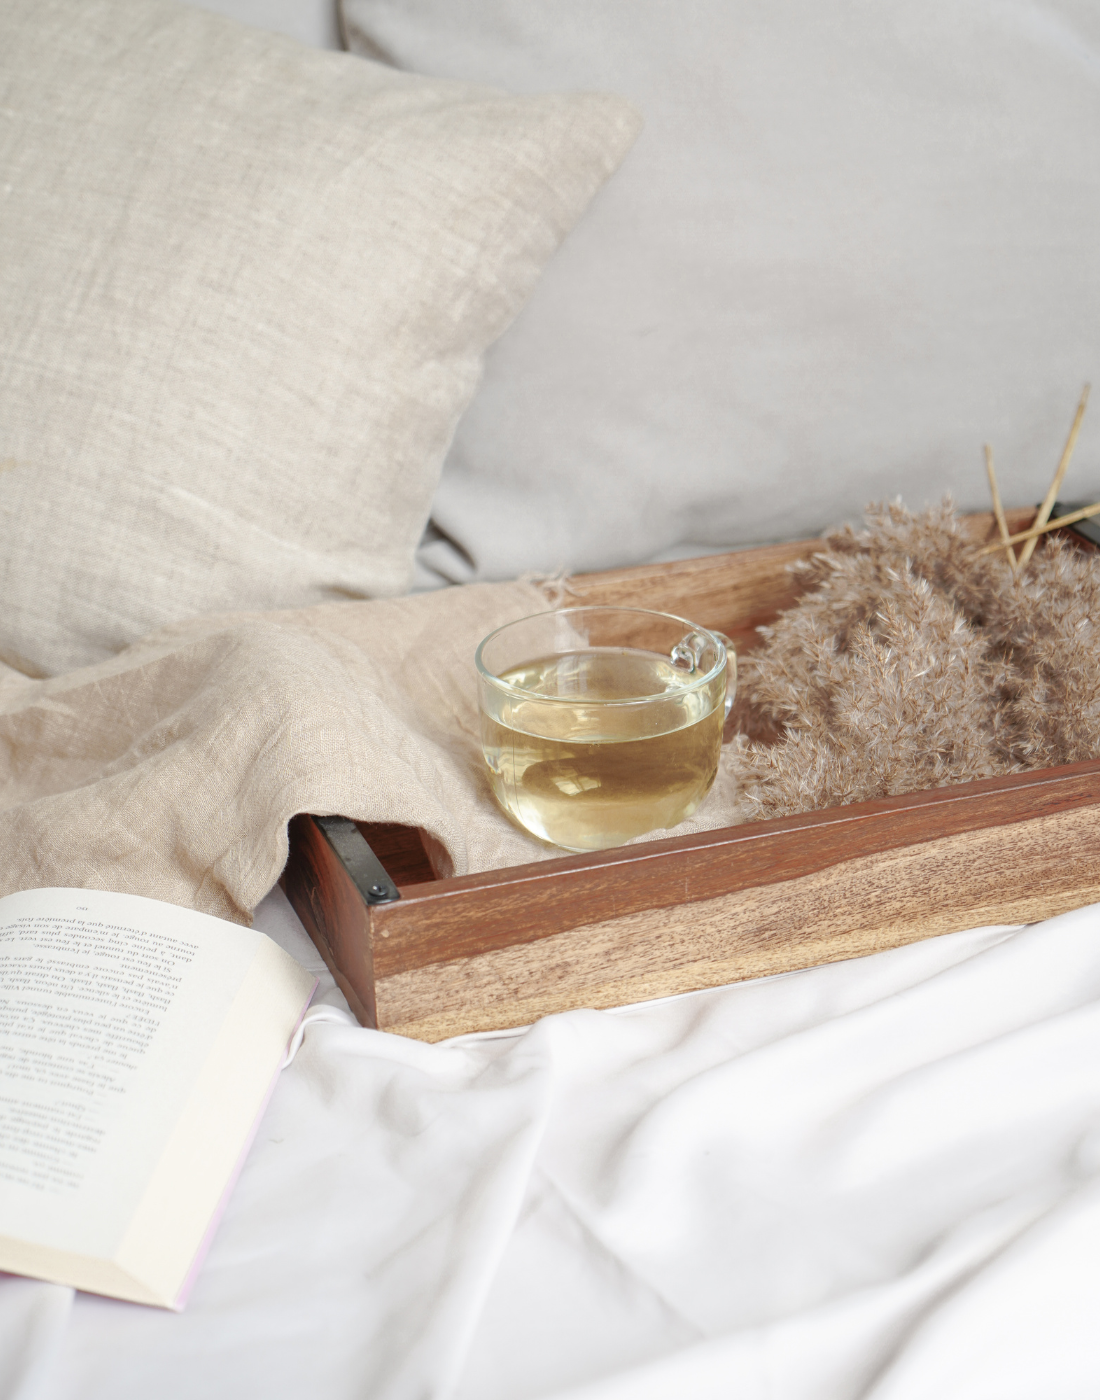 Tisane à la lavande dans une assiette de bois sur un lit